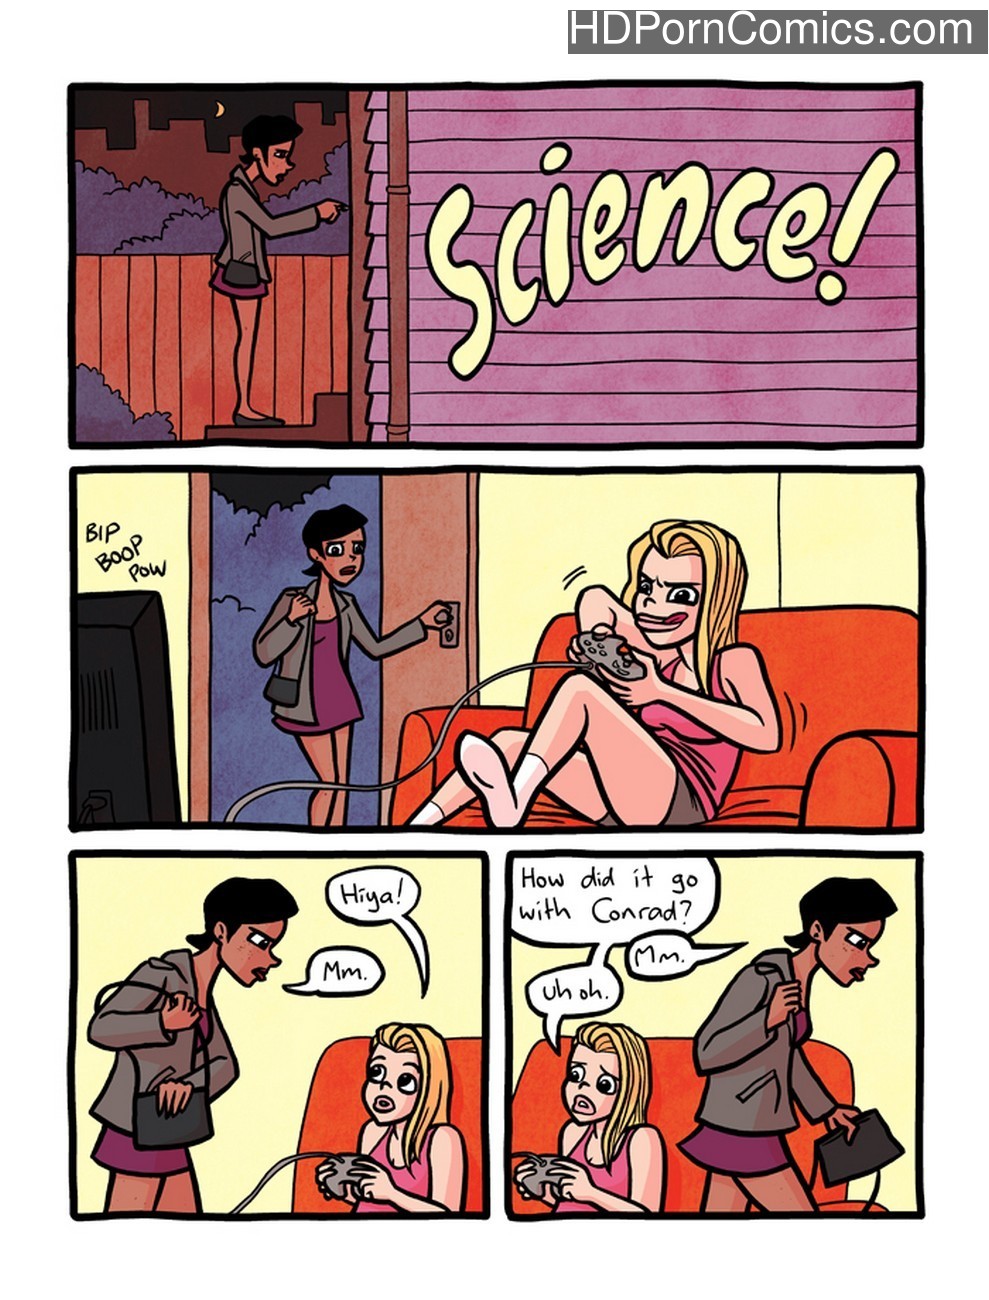 Science Porn Comics - Science! Sex Comic | HD Porn Comics